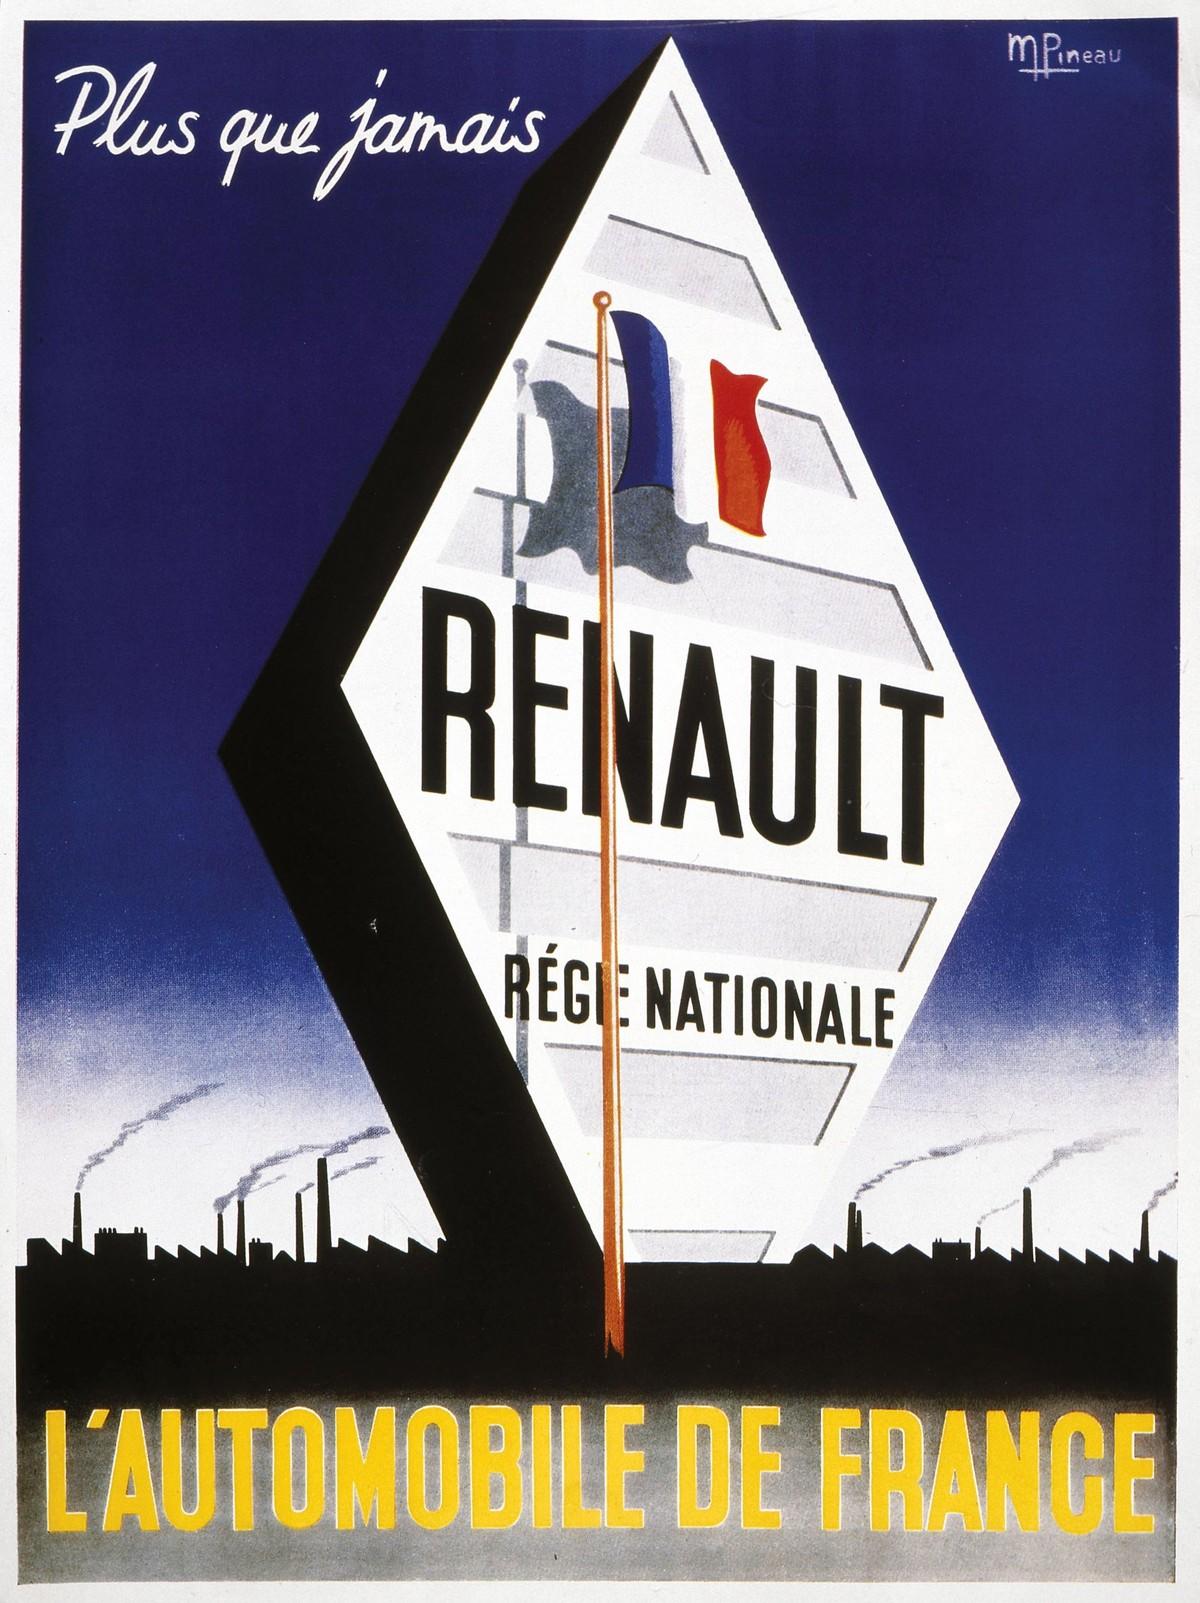 
Publicité Renault, entreprise accusée de collaboration et nationalisée, 1945.